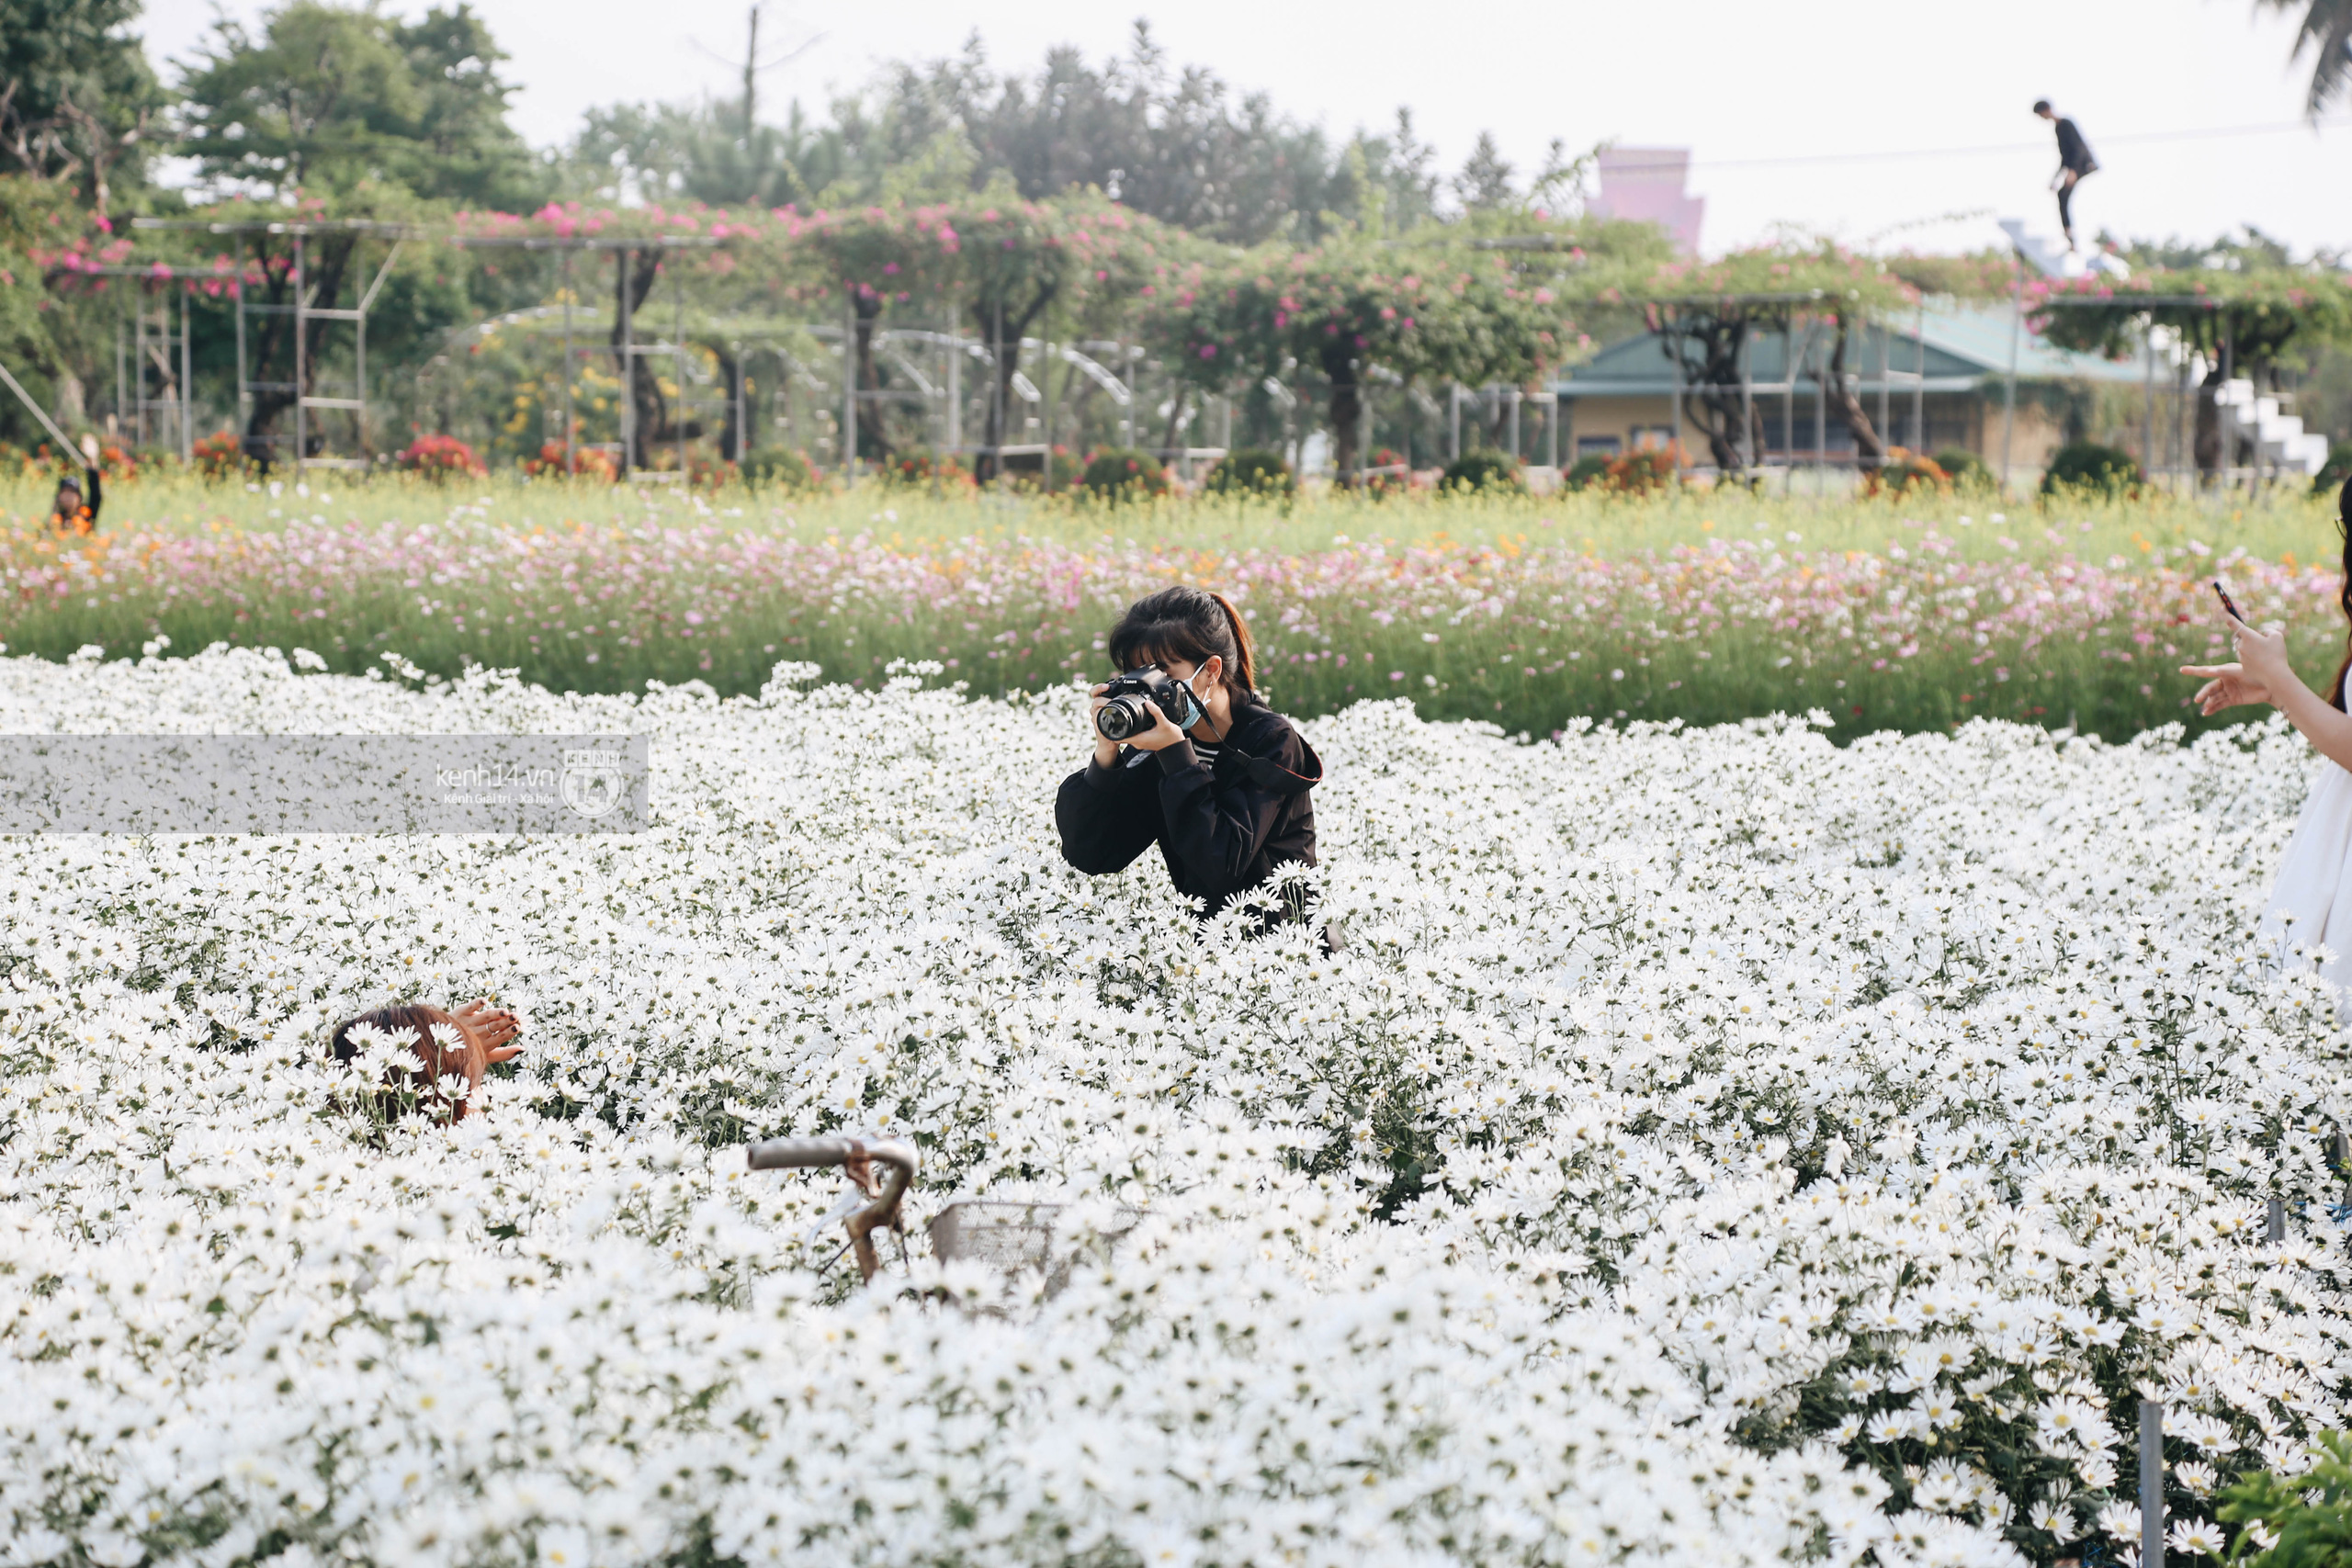 Trường ĐH rộng gần 200ha có vườn hoa đẹp nhất mùa đông Hà Nội, nhiều góc sống ảo cực chill chỉ với 25K - Ảnh 6.